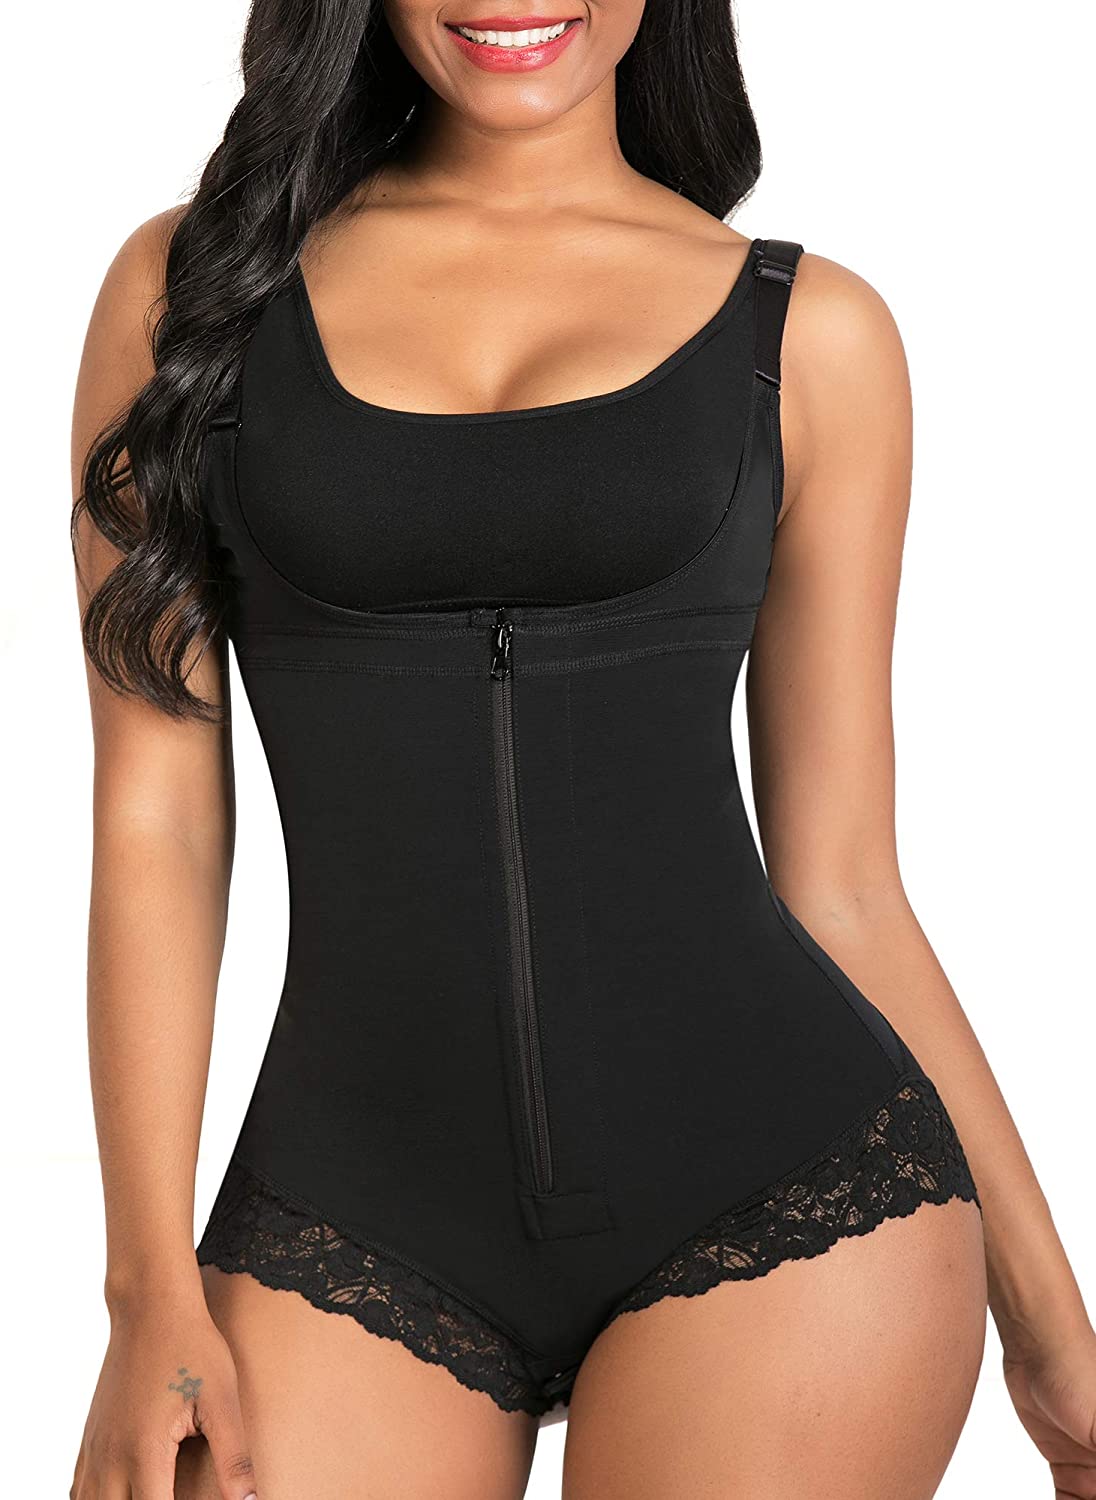 SHAPERX Shapewear for Women Tummy Fajas Colombianas Body Shaper Zipper O | eBay